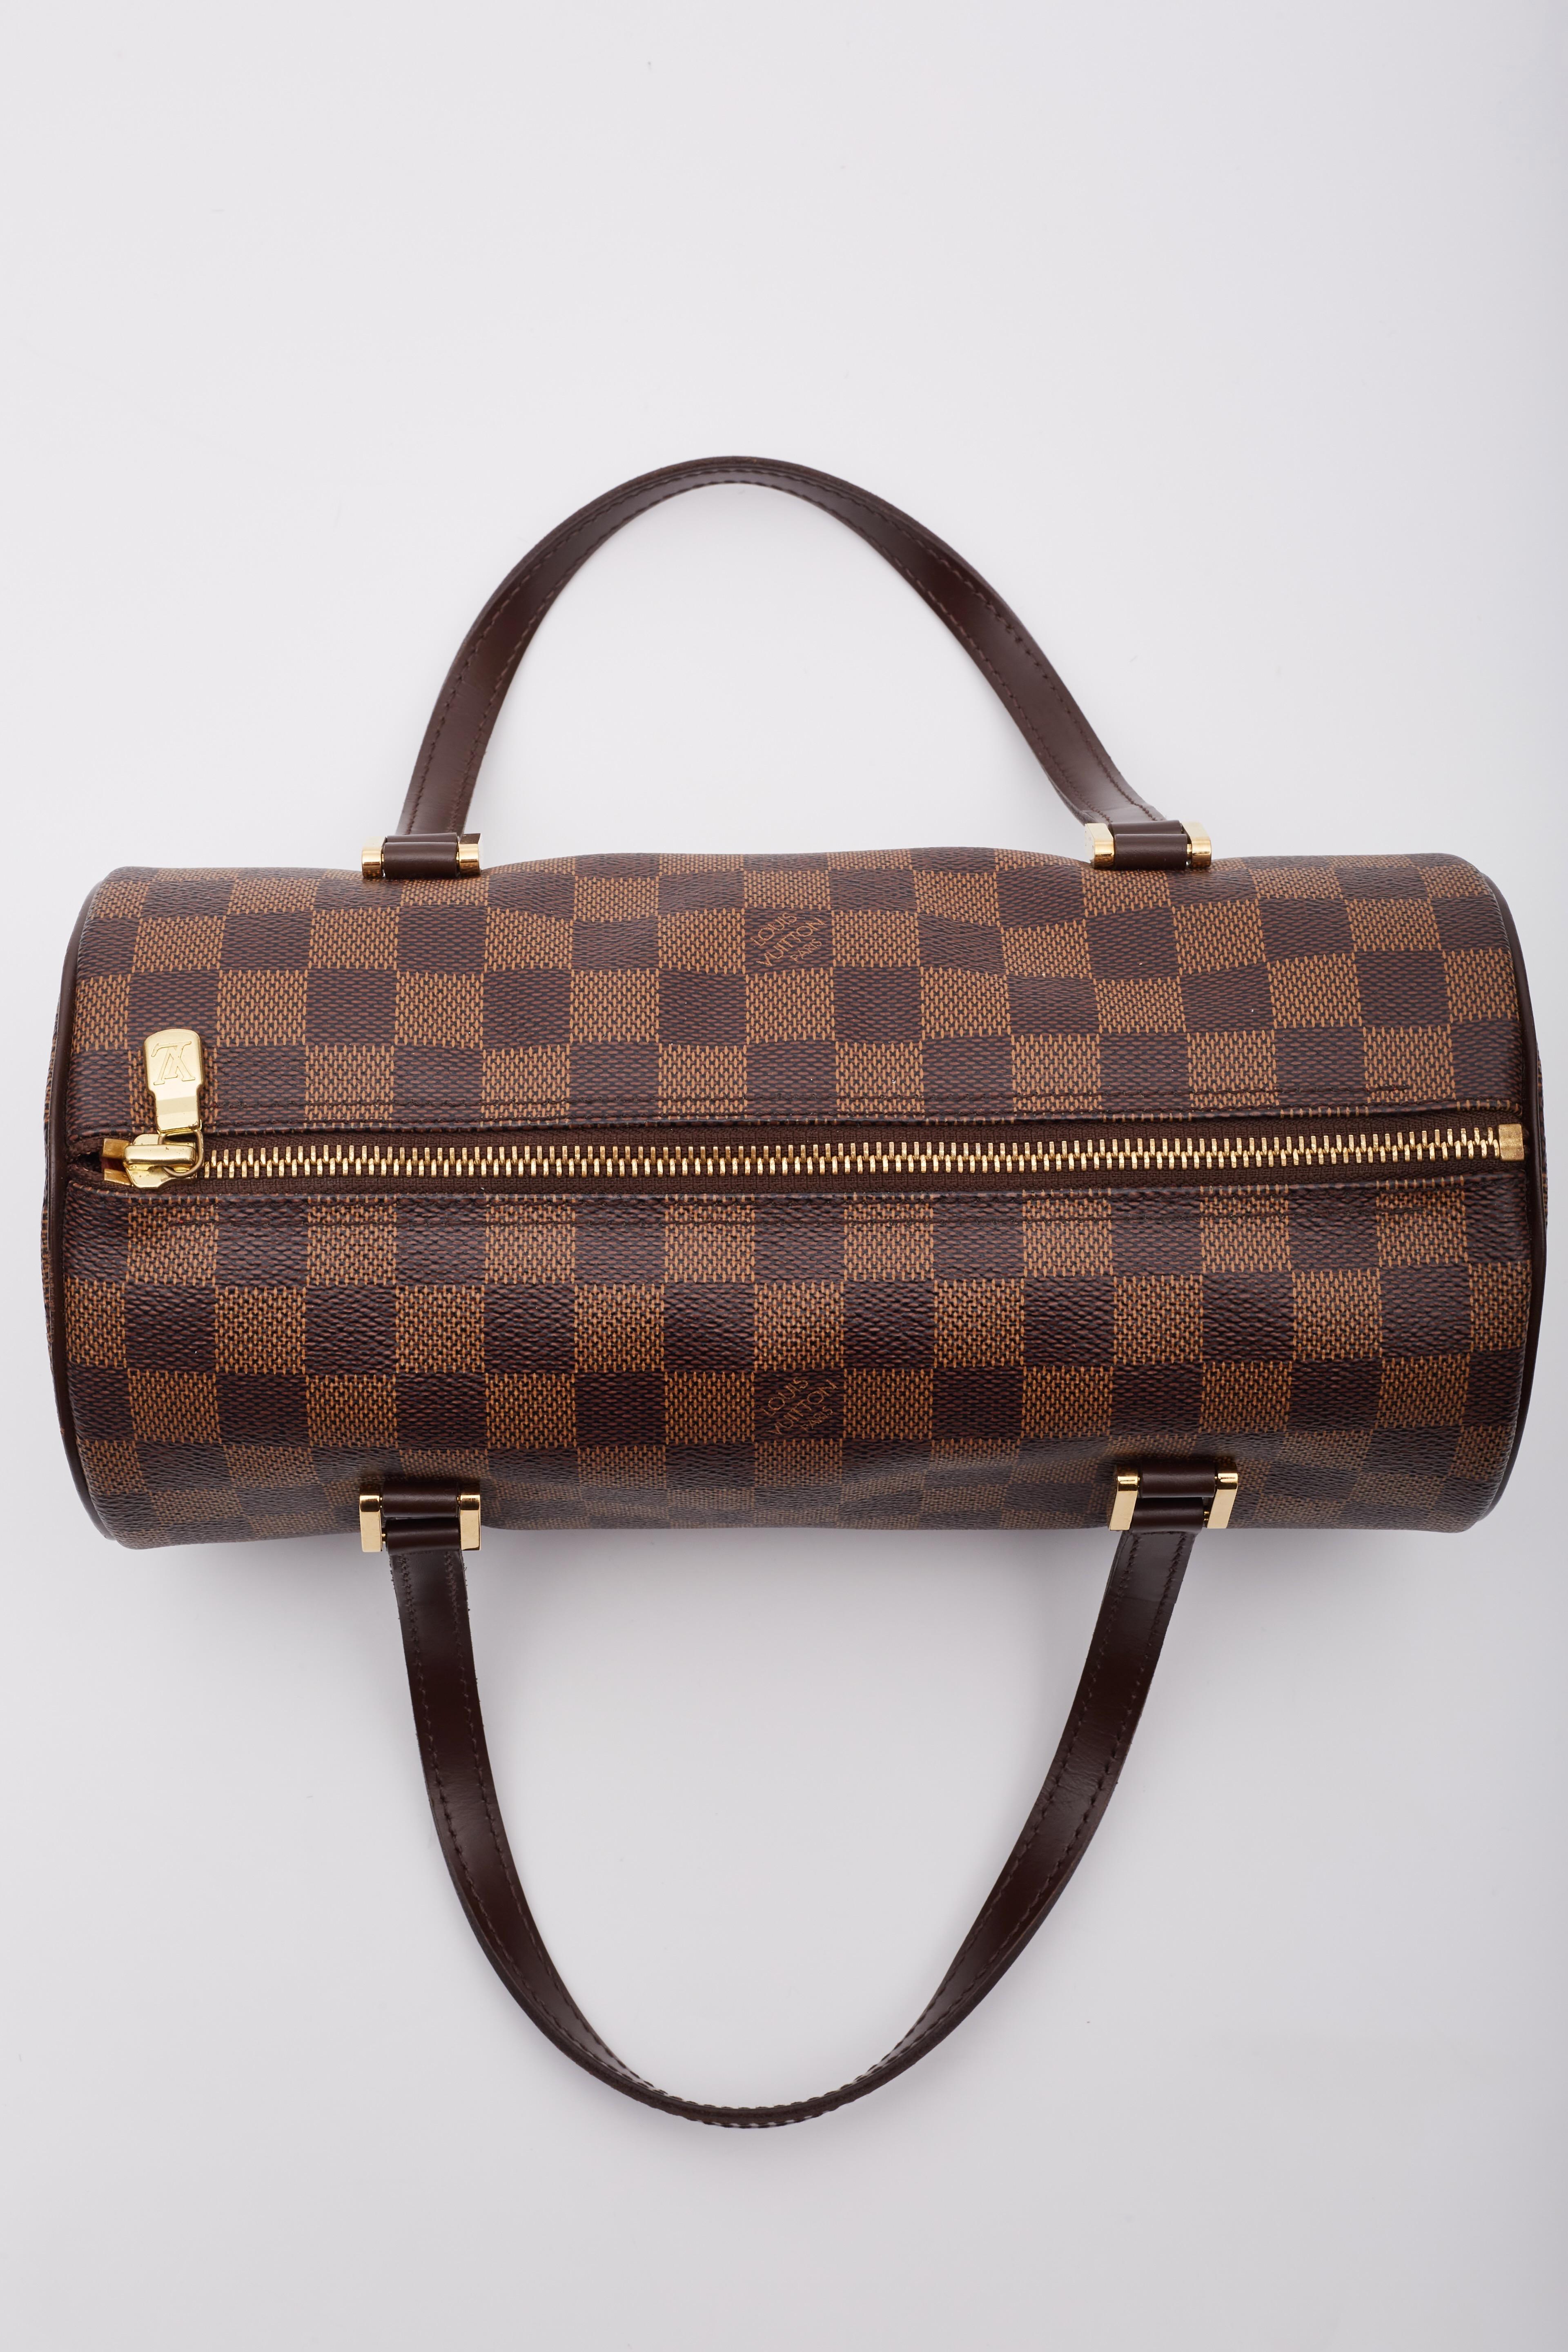 Louis Vuitton Damier Ebene Papillon 30 Shoulder Bag For Sale 4